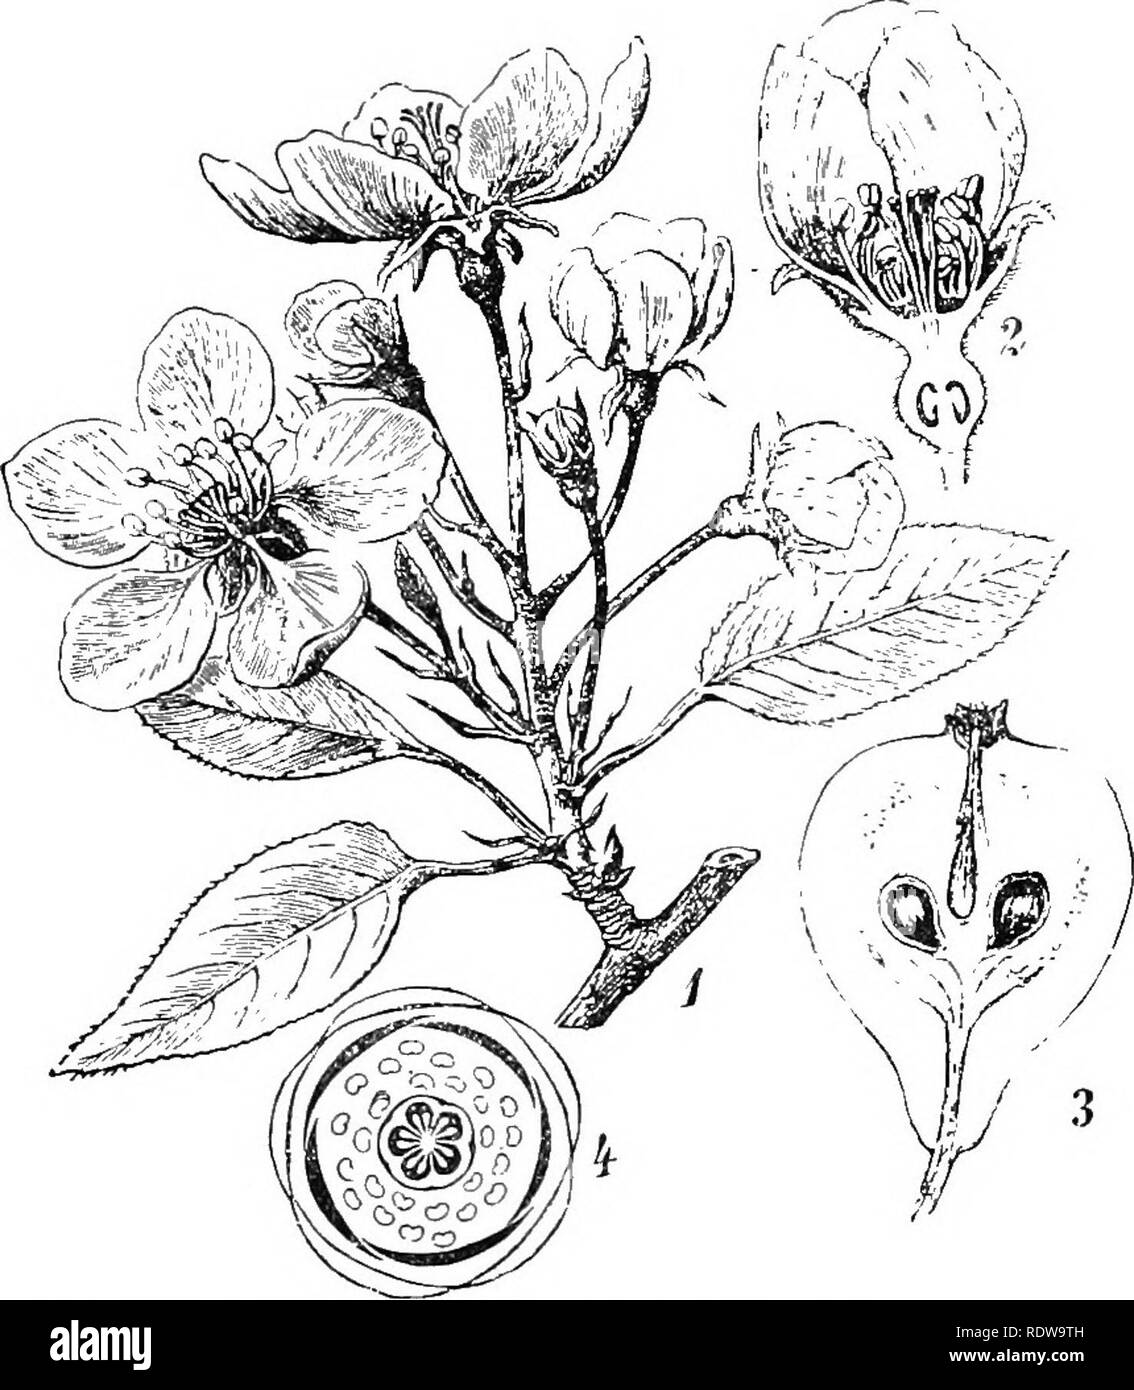 . Les plantes ; un texte-livre de botanique. La botanique. MONOCdTYLEDONS et dicotylédones &gt;o;3 beaucoup de vrai roses ont une forte ressemblance (Fig. '•307) à la renoncule (Rani(nciihis hypogy), avec leurs fleurs ordinaire-, et un nombre indéfini des étamines et des carpelles, mais les sépales et pétales sont beaucoup plus souvent cinq, le nombre d'être Dicotyl mieux établie. L'. Fig. 249. La politique.Poirier (pintes communis), montrant hranch avec fleurs (1), sec- tion d'une fleur iJ) montrant son epigynoiis personnage, section de fruits (3) montrant l'thiclcened calice à l'extérieur de l'ovaire ou "core" ( Banque D'Images